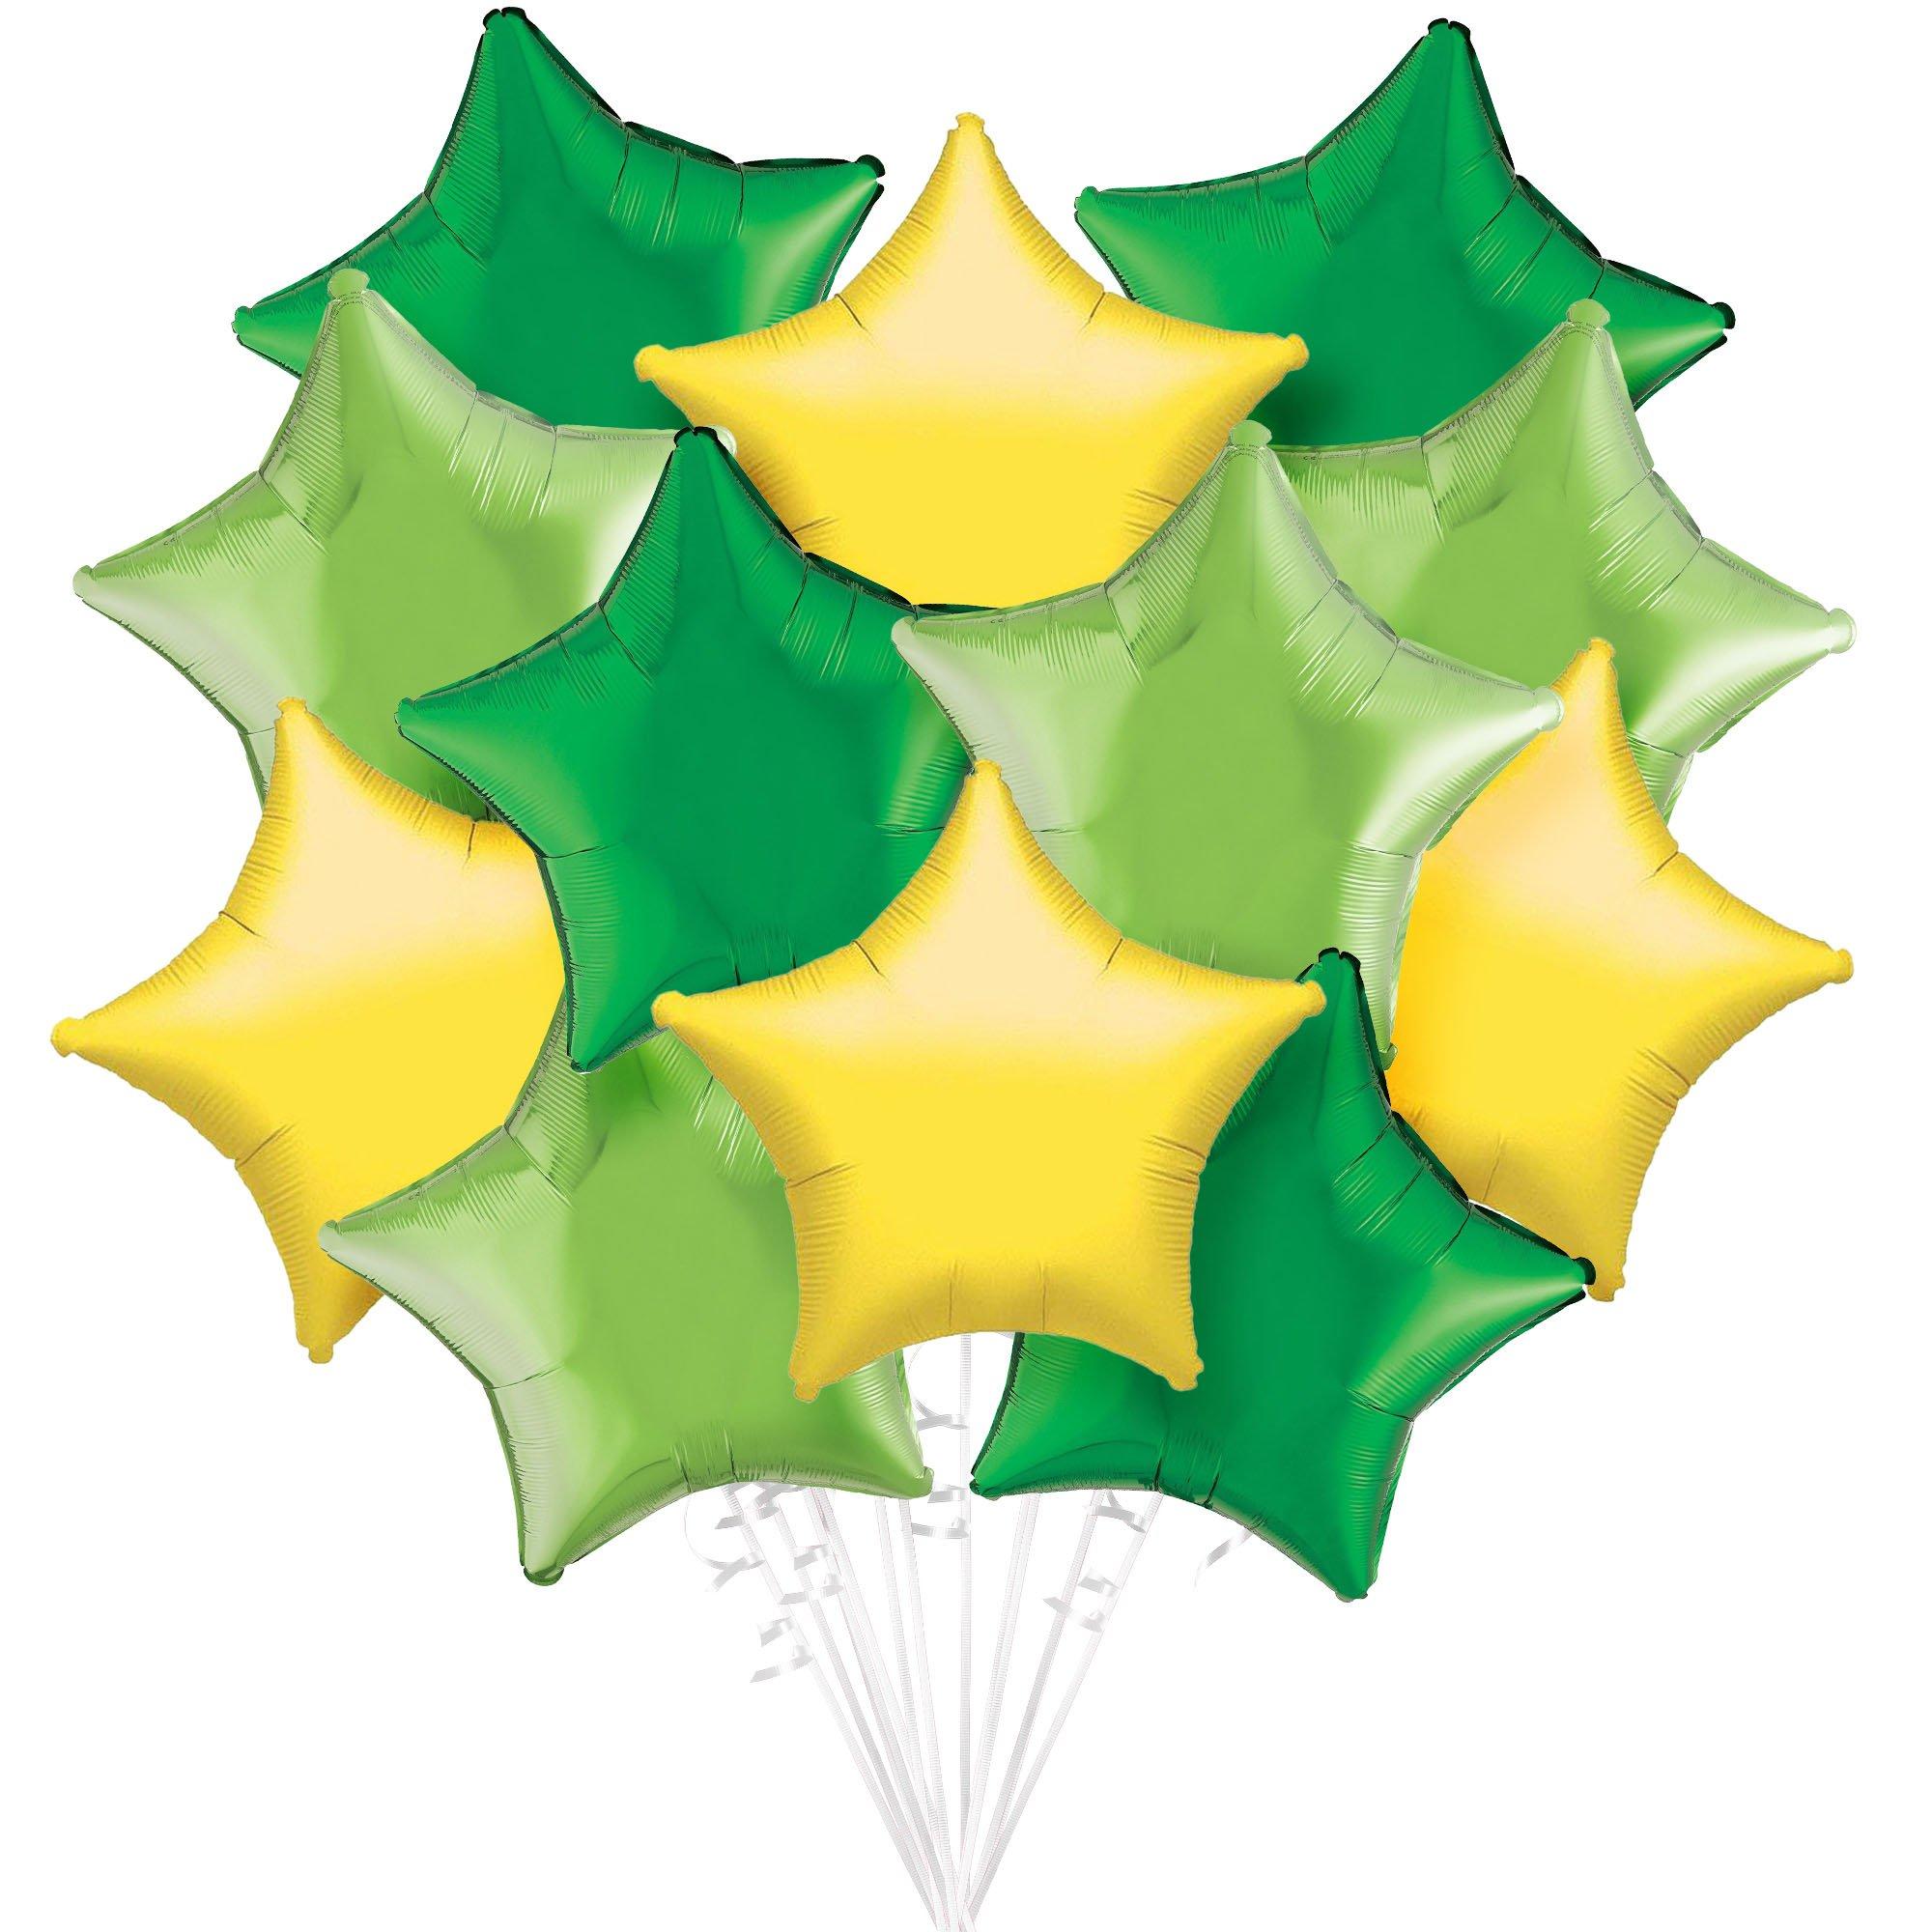 Green & Yellow Star Foil Balloon Bouquet, 12pc